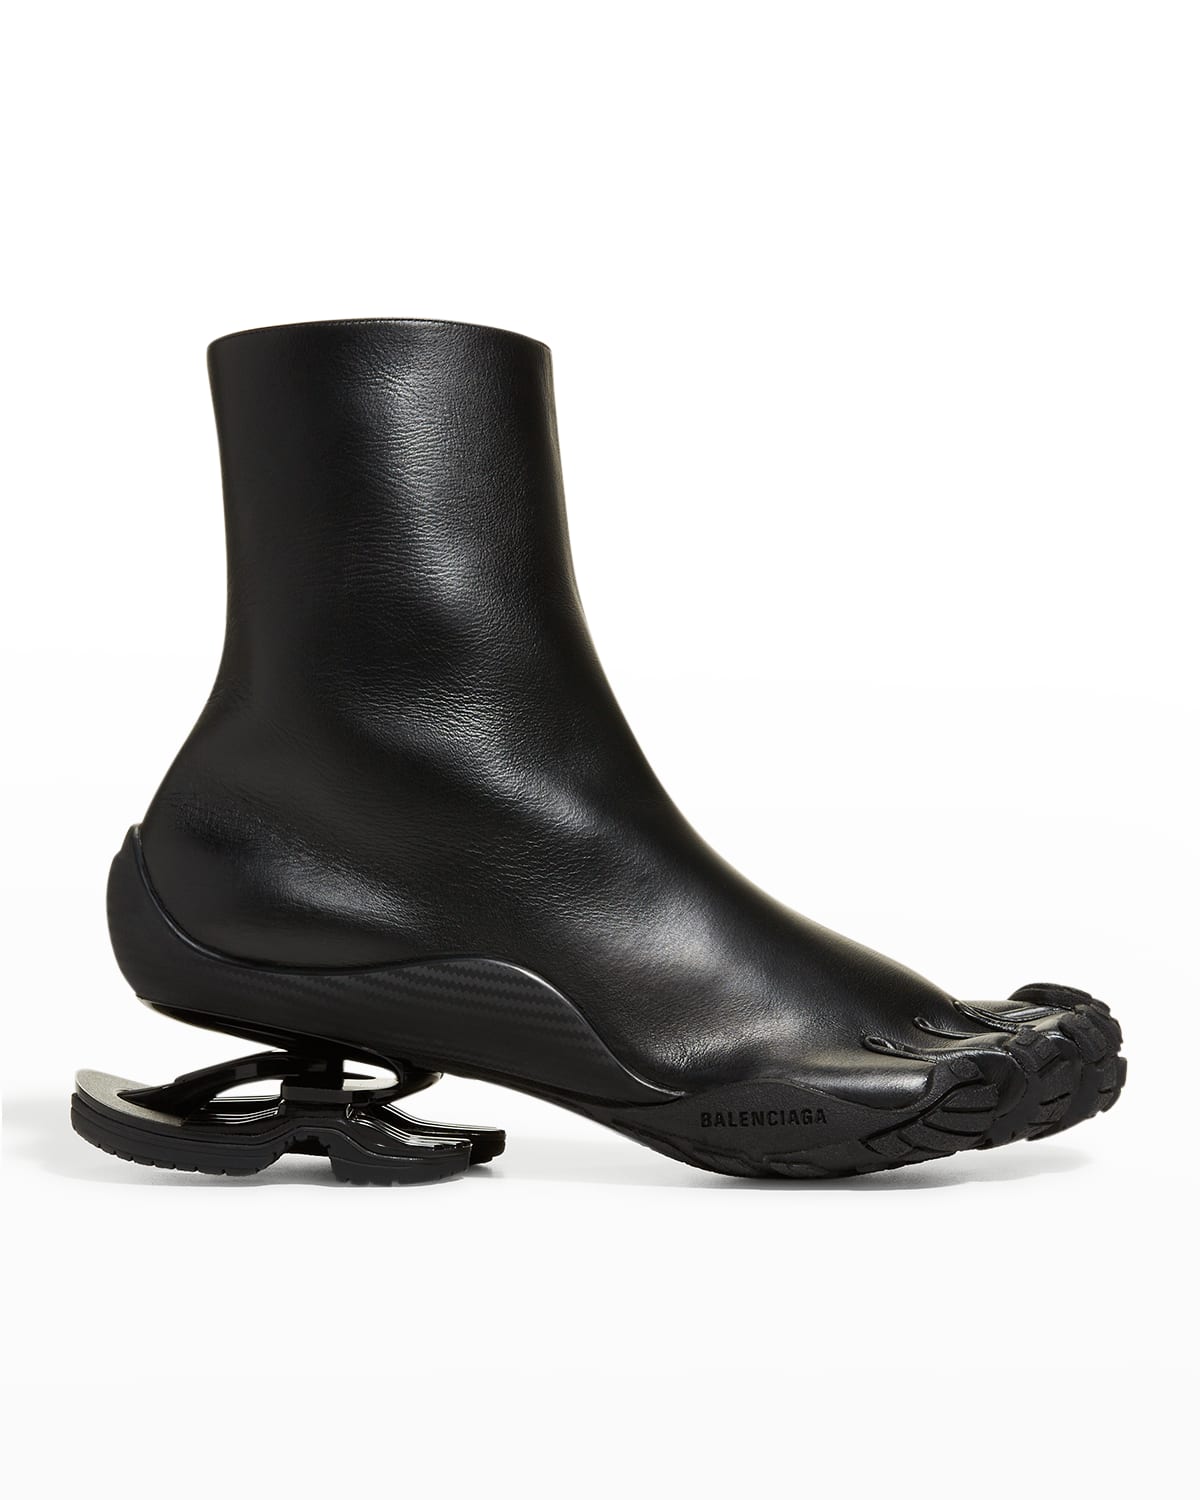 BALENCIAGA Boots for Men | ModeSens